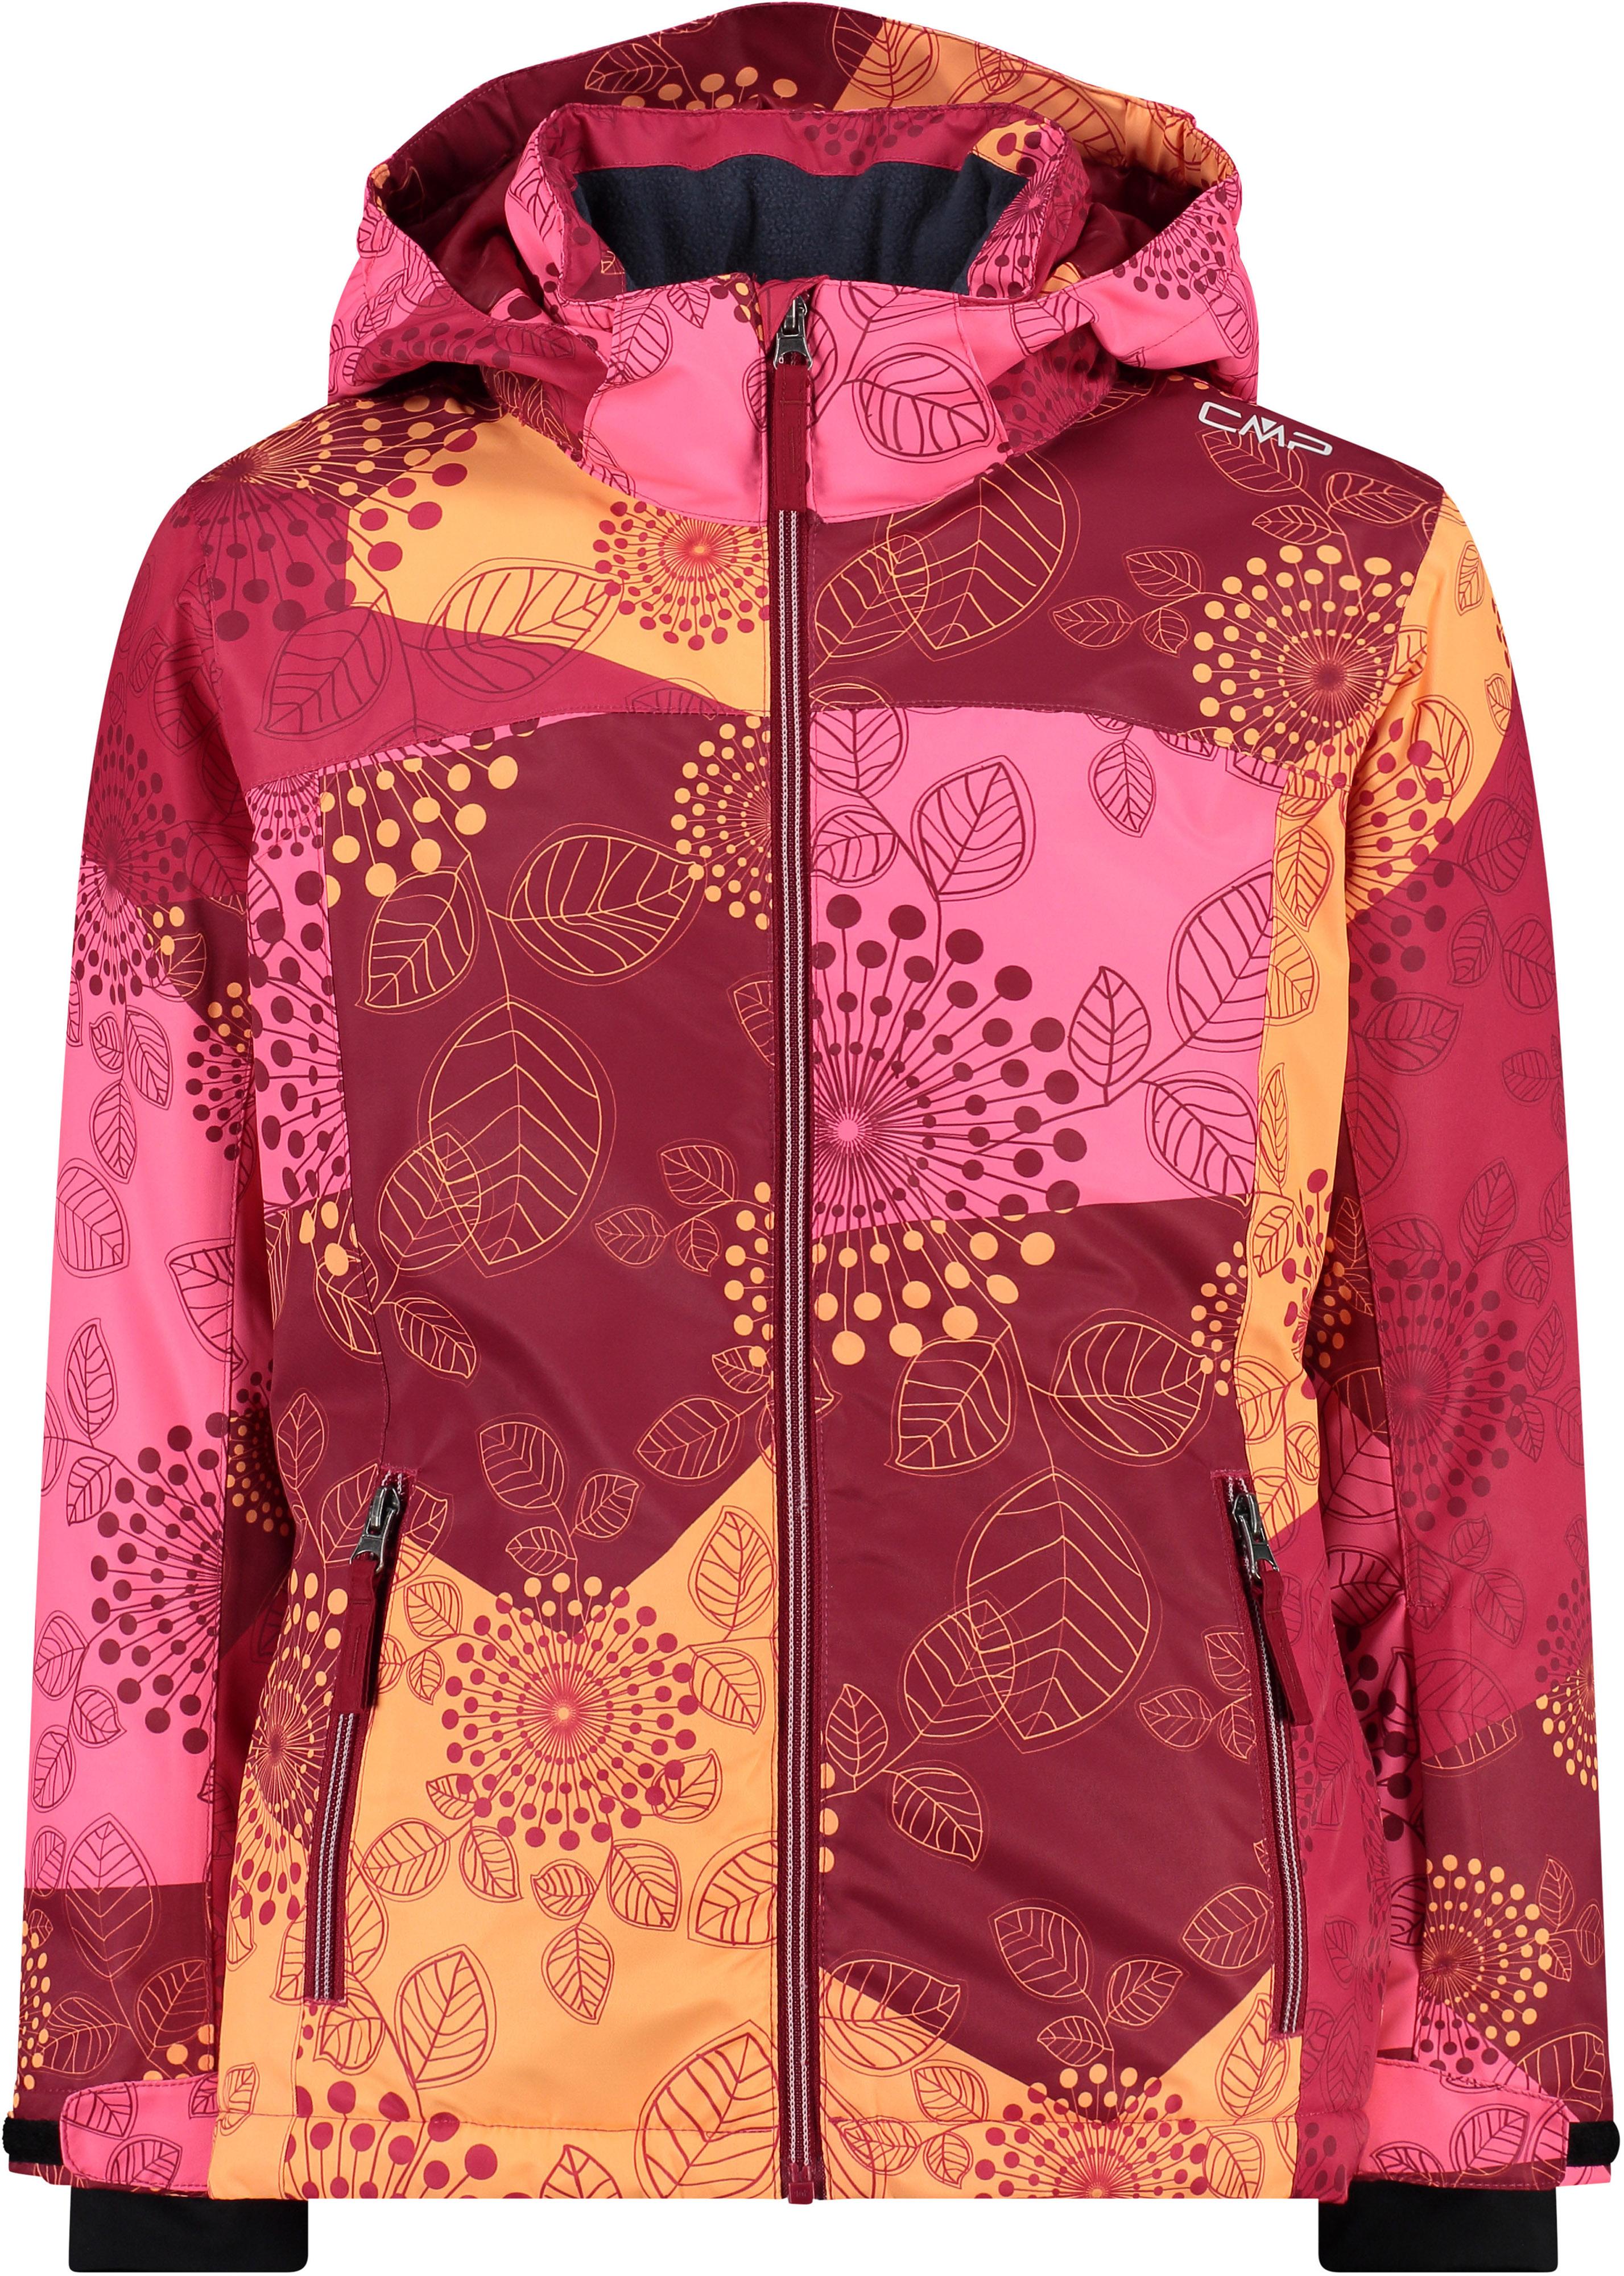 CMP Online im Skijacke SportScheck anemone-fuxia-gloss kaufen Shop Mädchen von